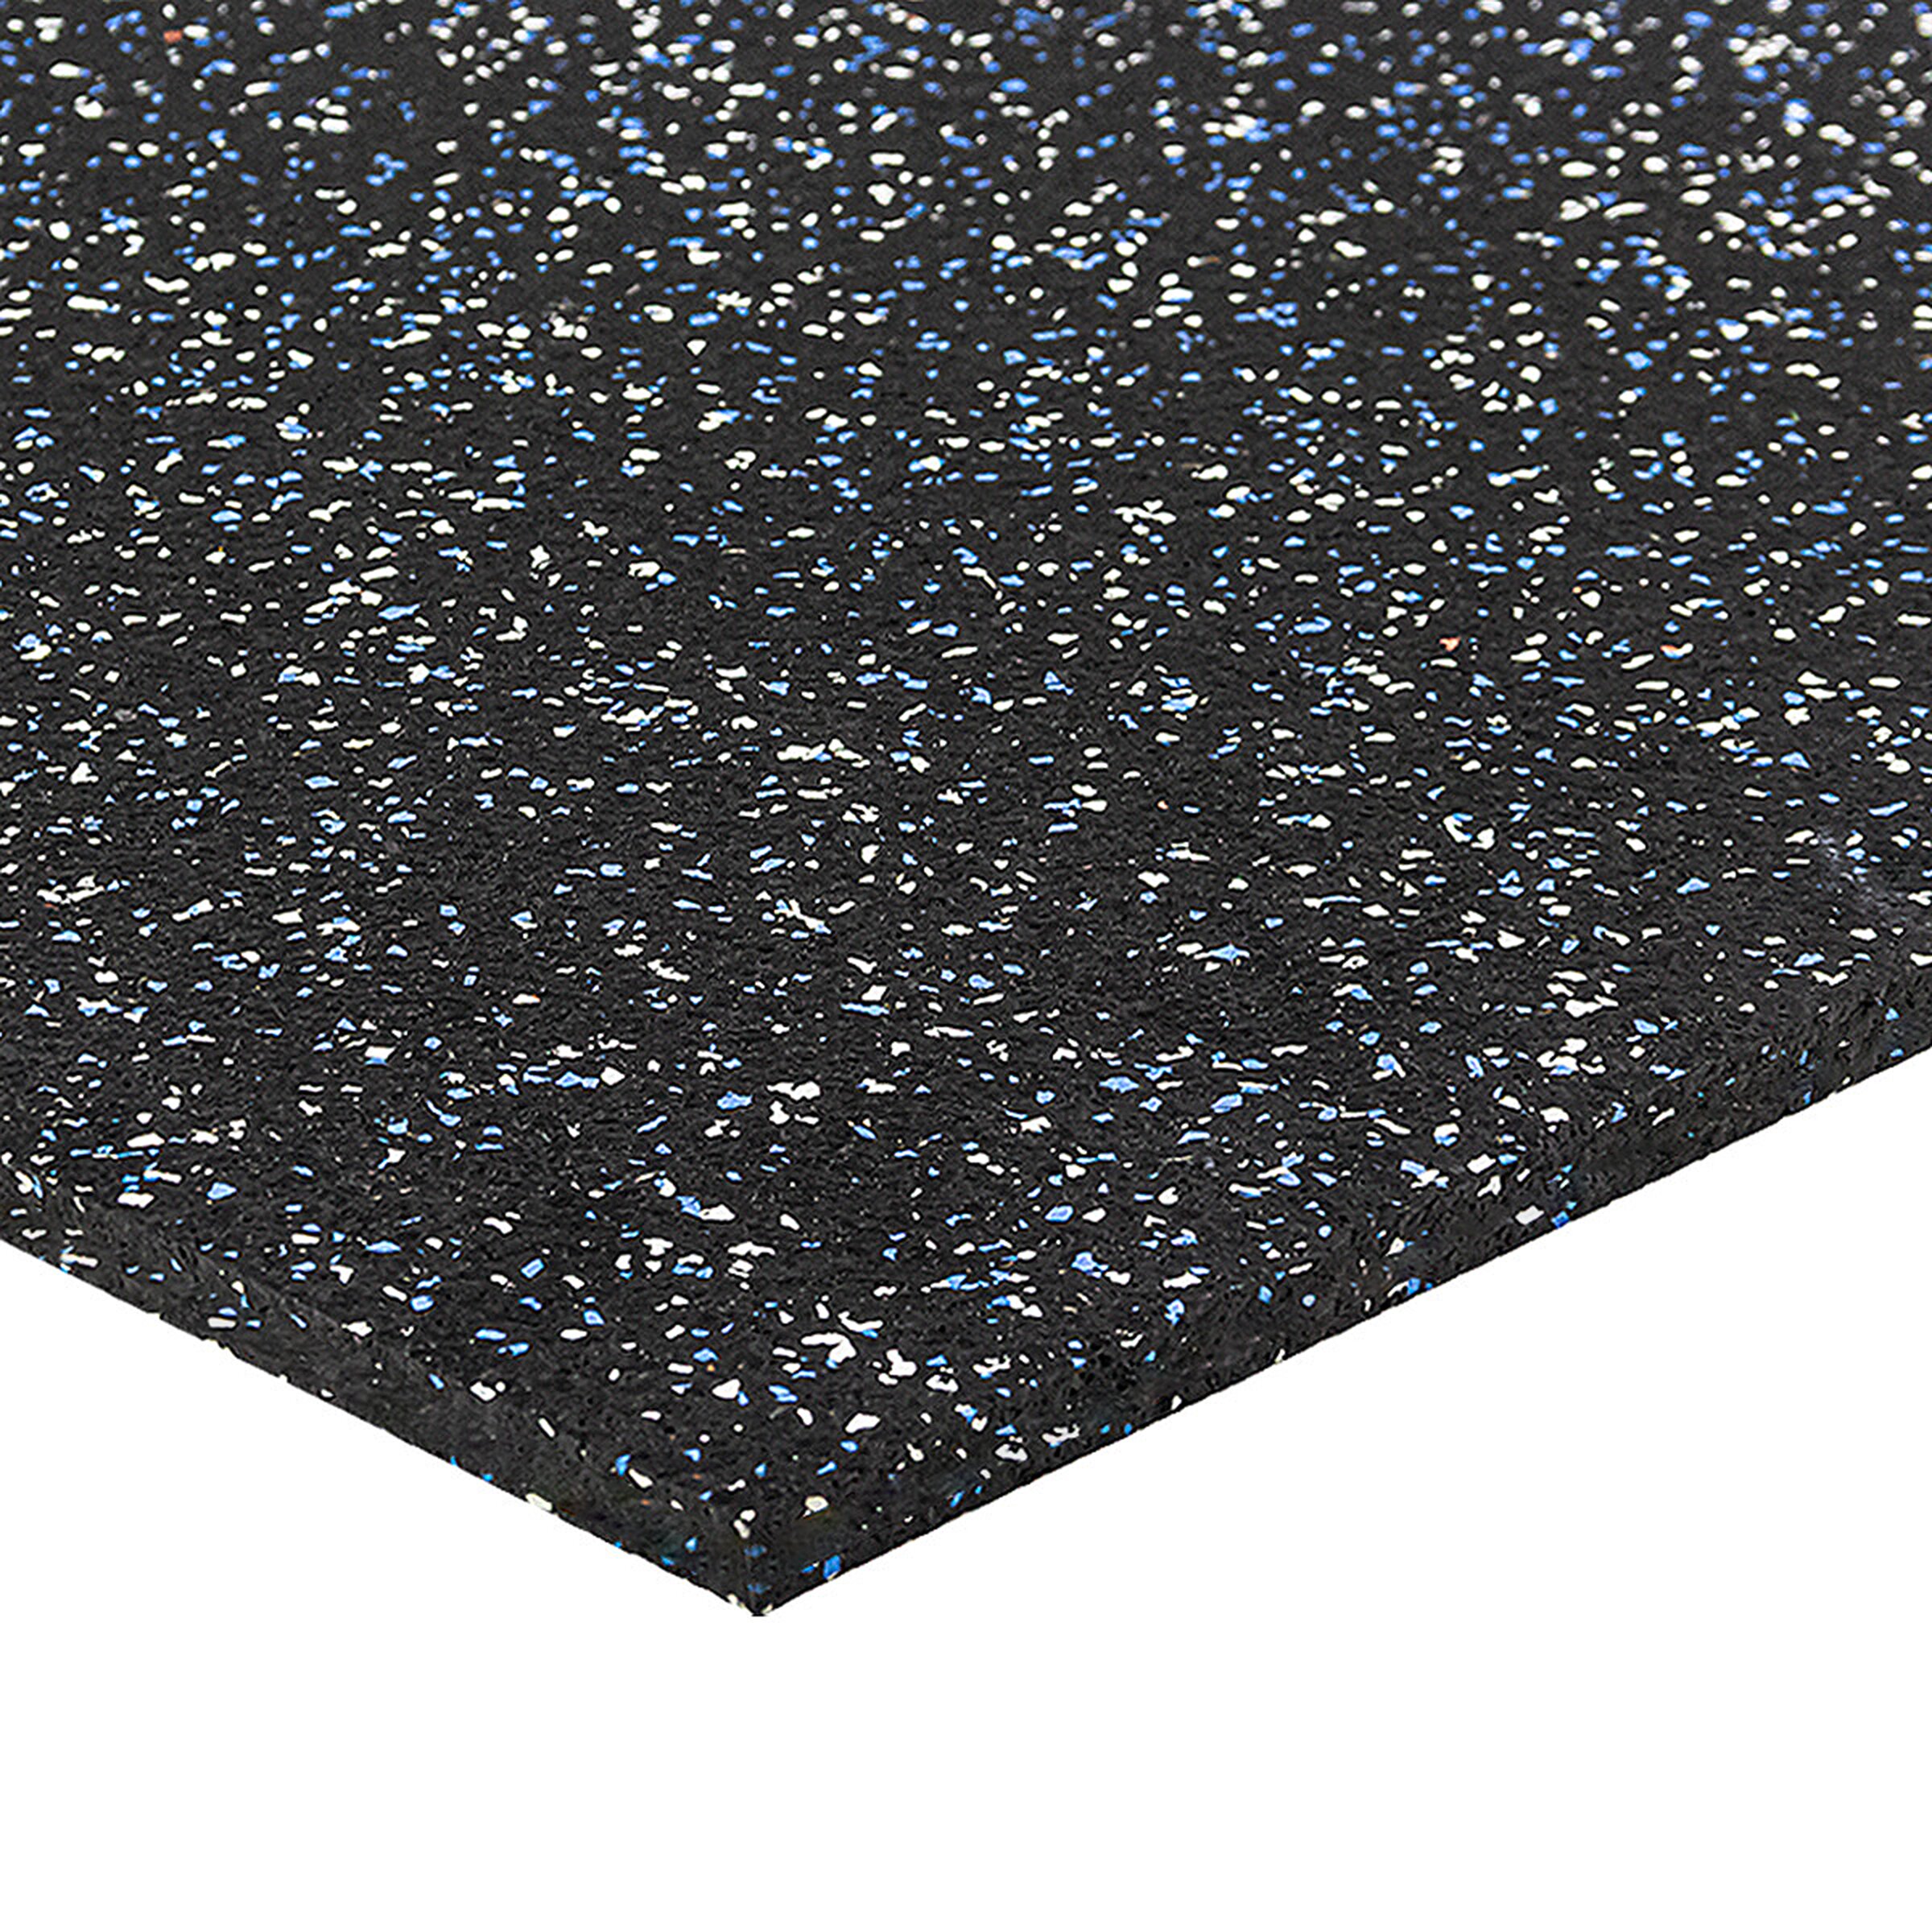 Čierno-bielo-modrá podlahová guma (puzzle - stred) FLOMA FitFlo SF1050 - dĺžka 100 cm, šírka 100 cm, výška 1 cm